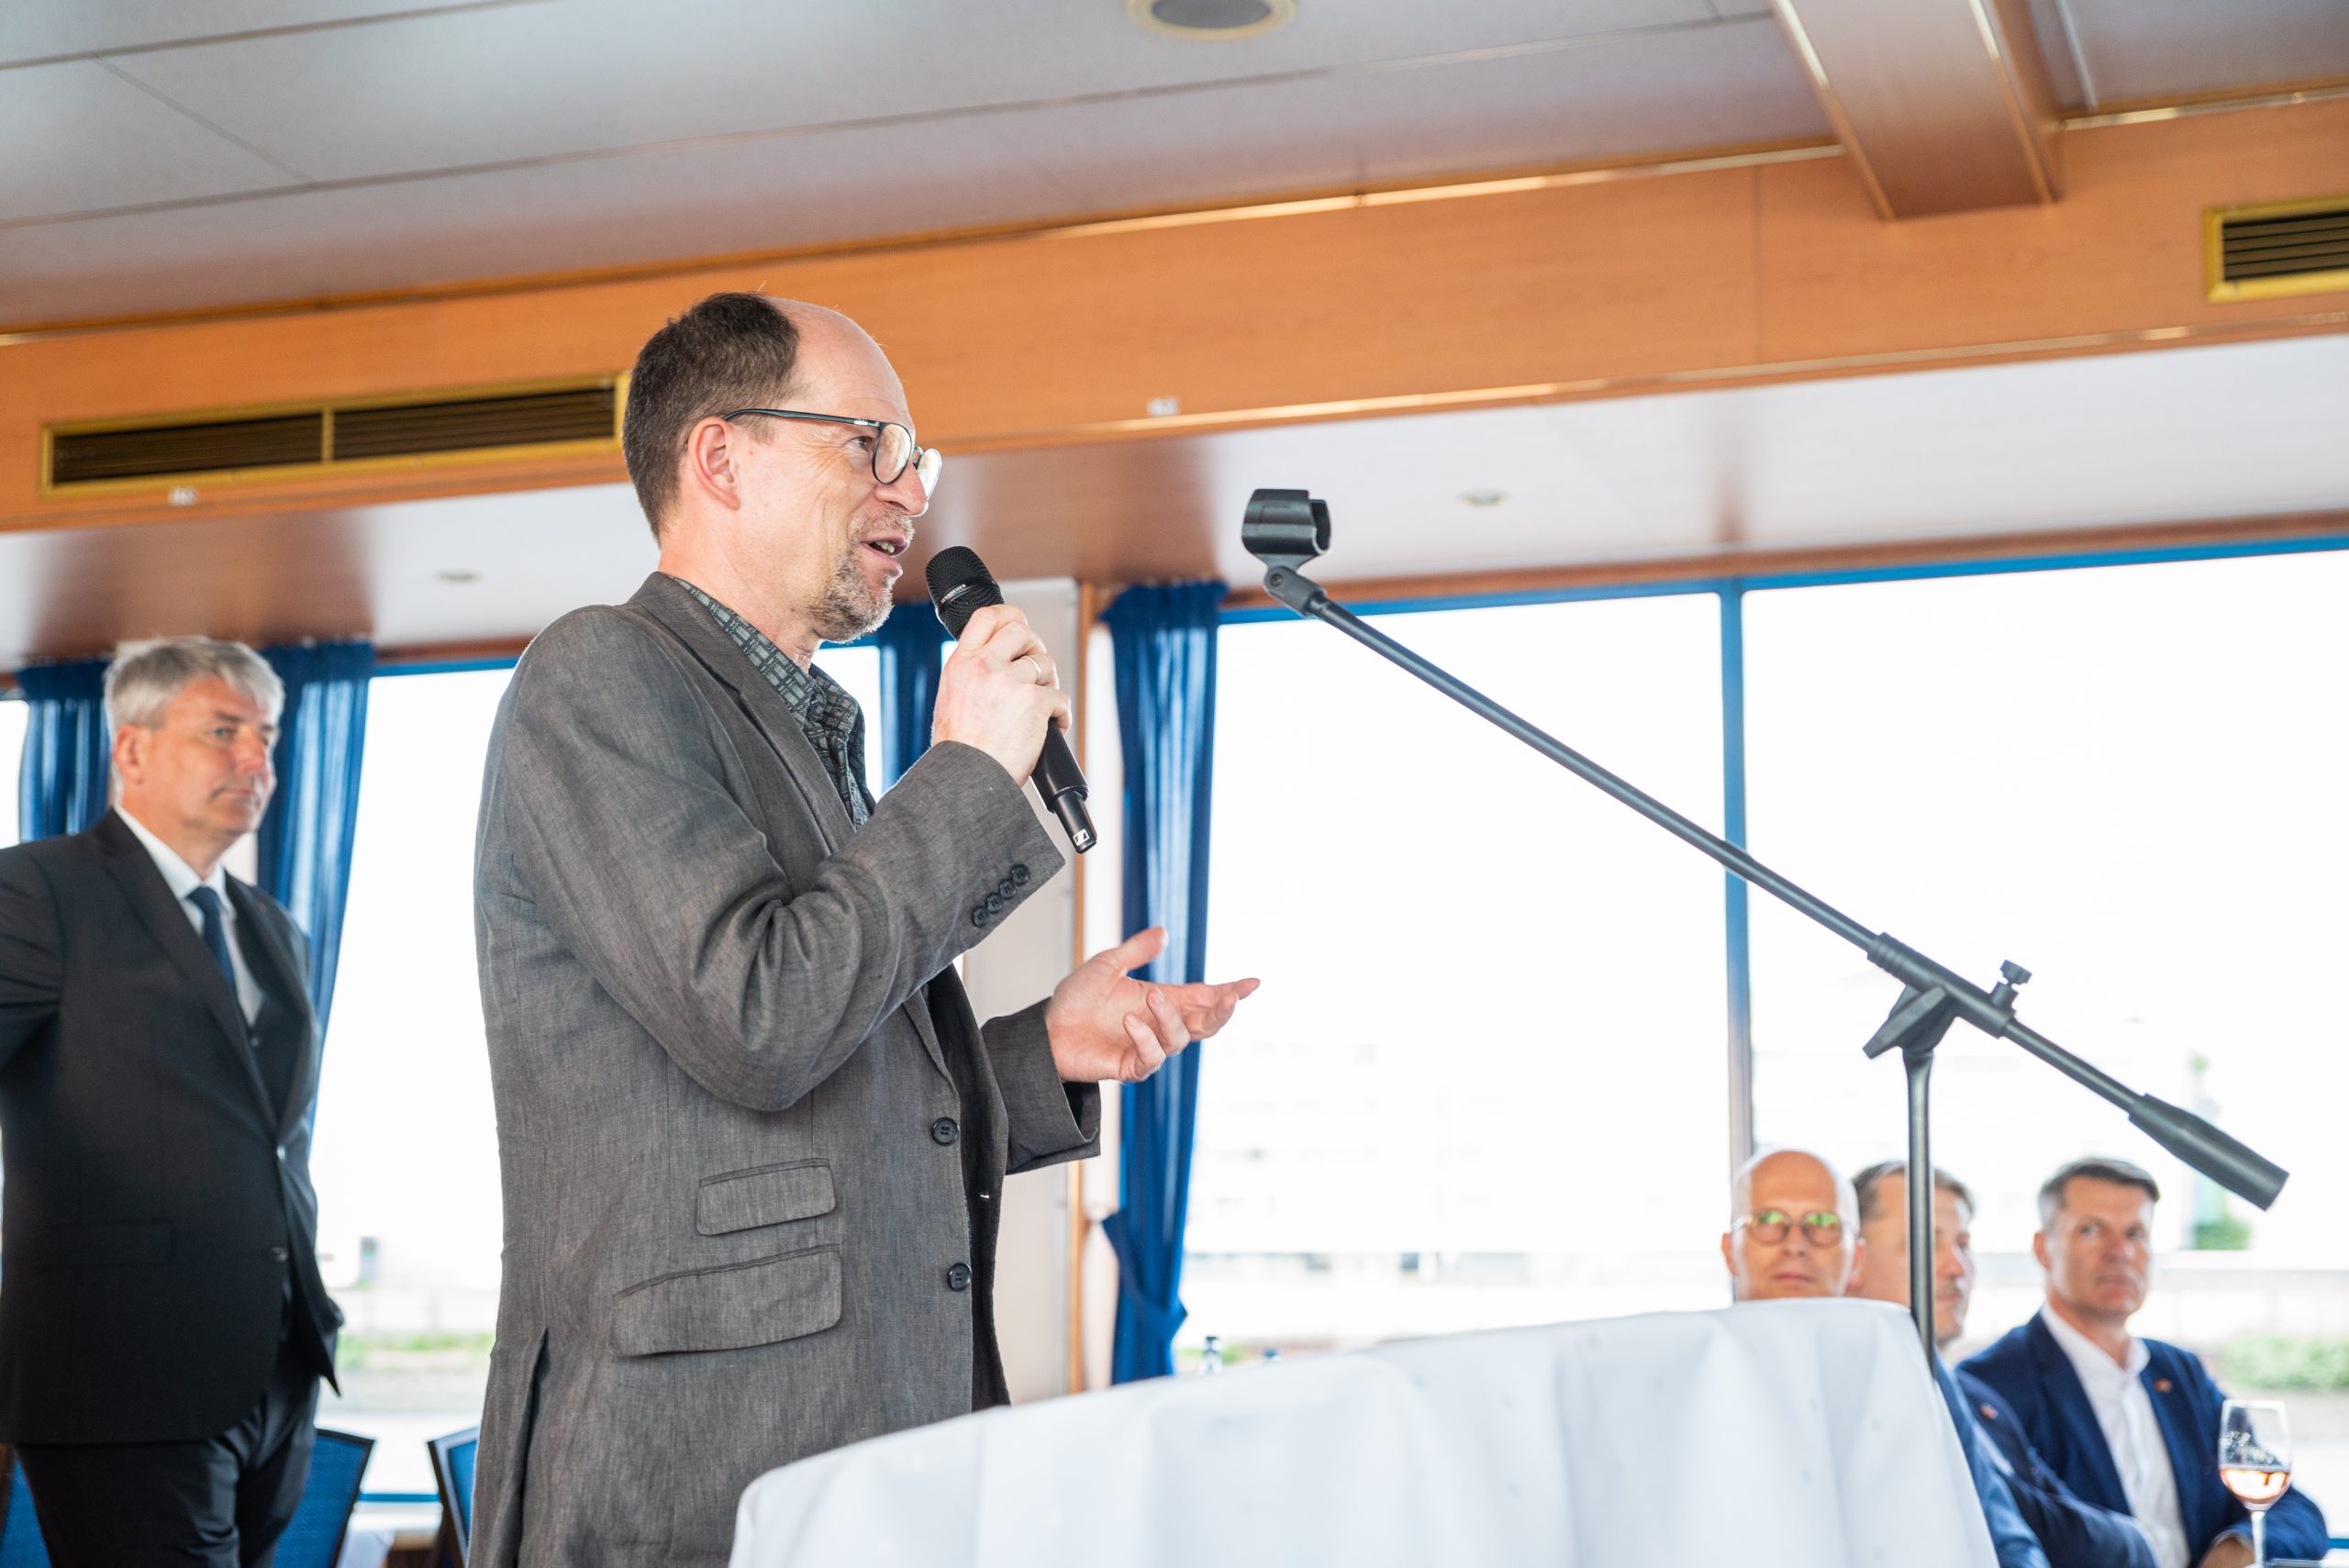 Matthias Ristau, Generalsekretär, spricht auf der Hafenrundfahrt des Konsularkorps in Hamburg über die Bedeutung der Seeleute und den Einsatz der Seemannsmission 